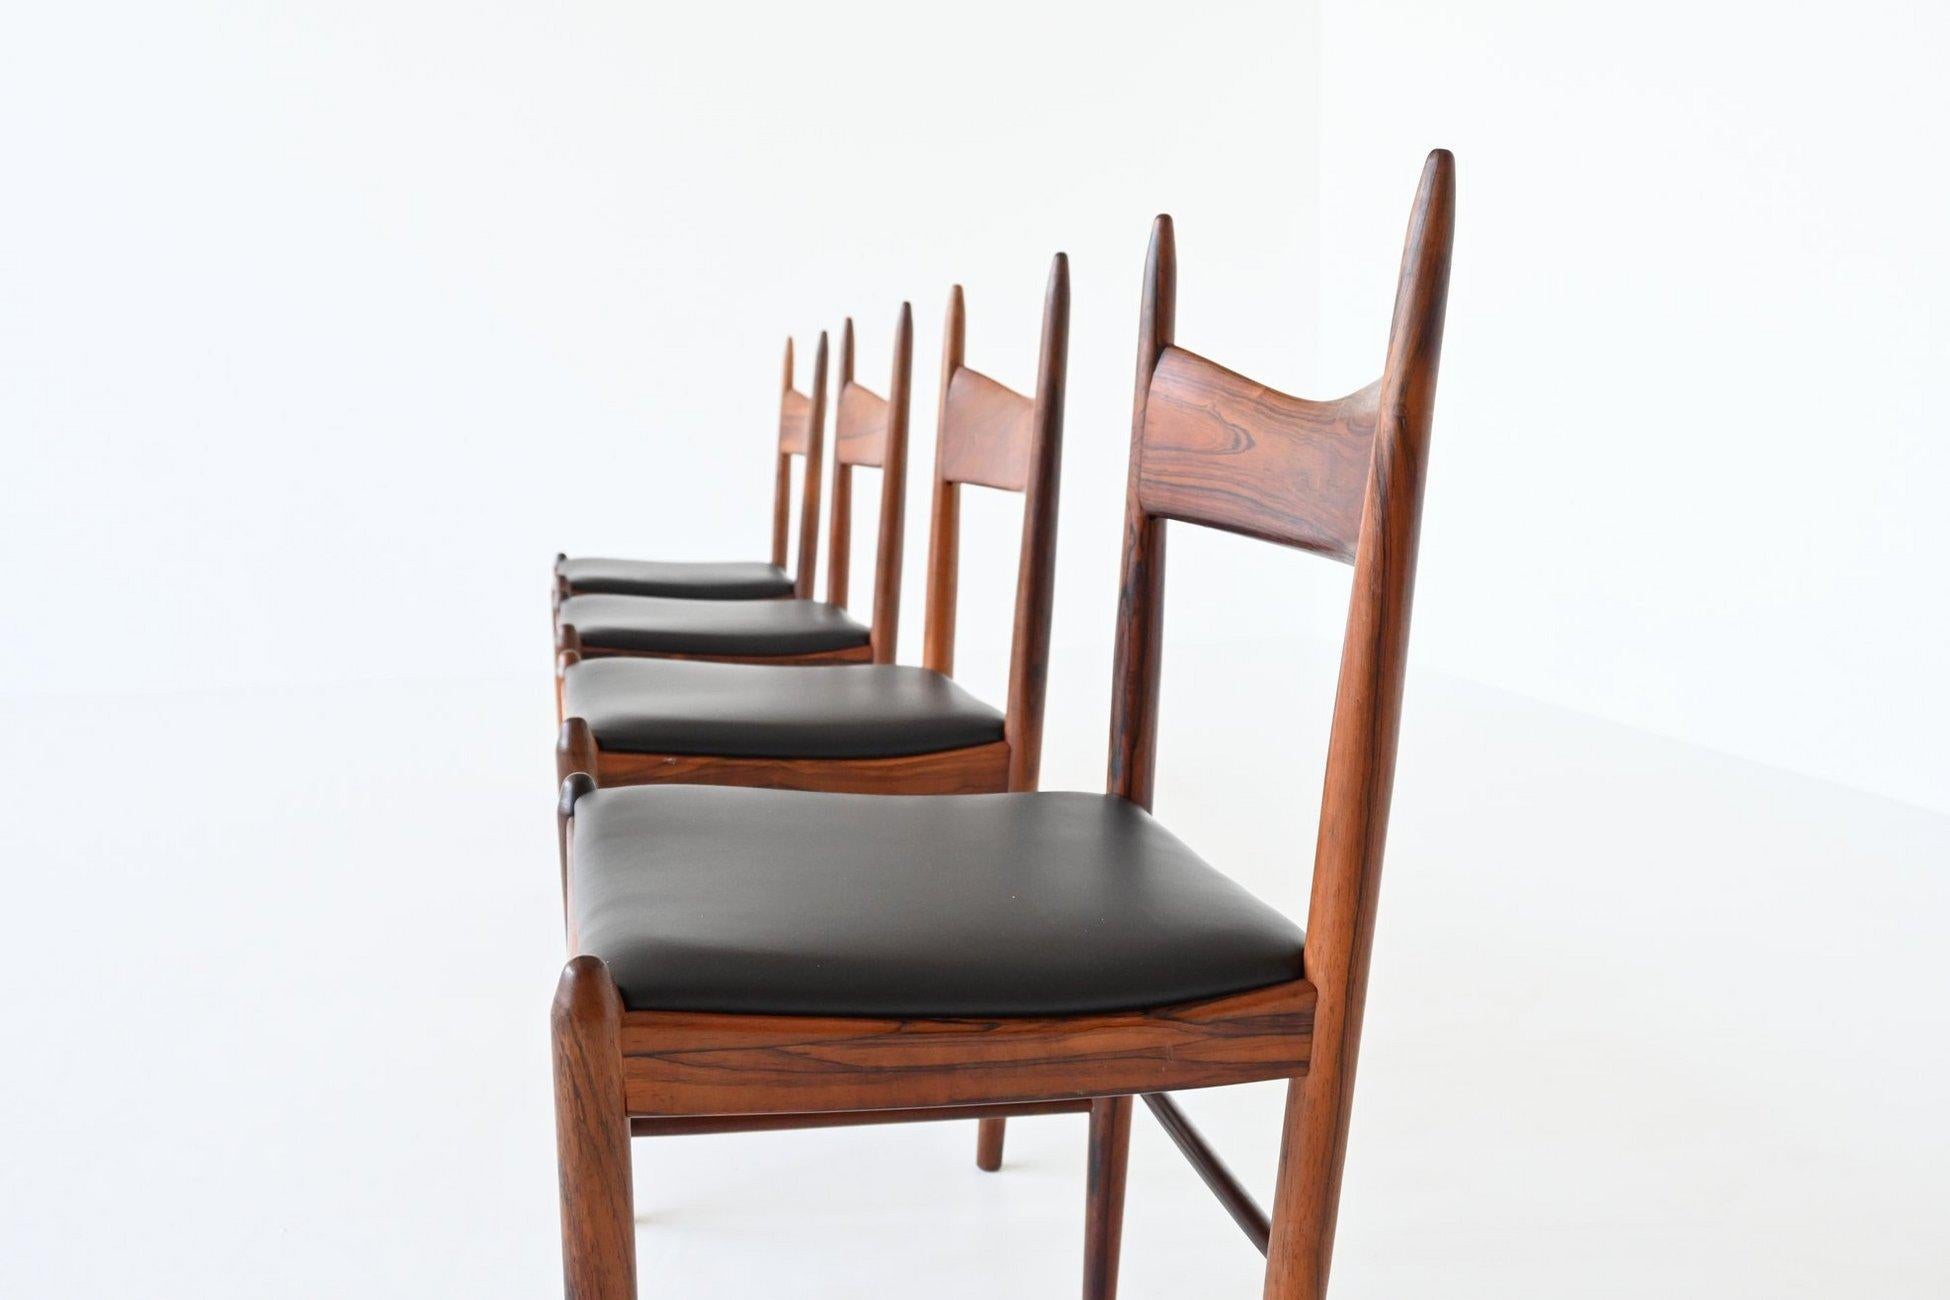 Wunderschönes Set aus vier Esszimmerstühlen, entworfen von H. Vestervig Eriksen für Brdr. Tromborg, Dänemark 1960. Diese erstaunlich geformten Stühle sind aus schön gemasertem, massivem brasilianischem Palisanderholz gefertigt und die Sitze sind mit